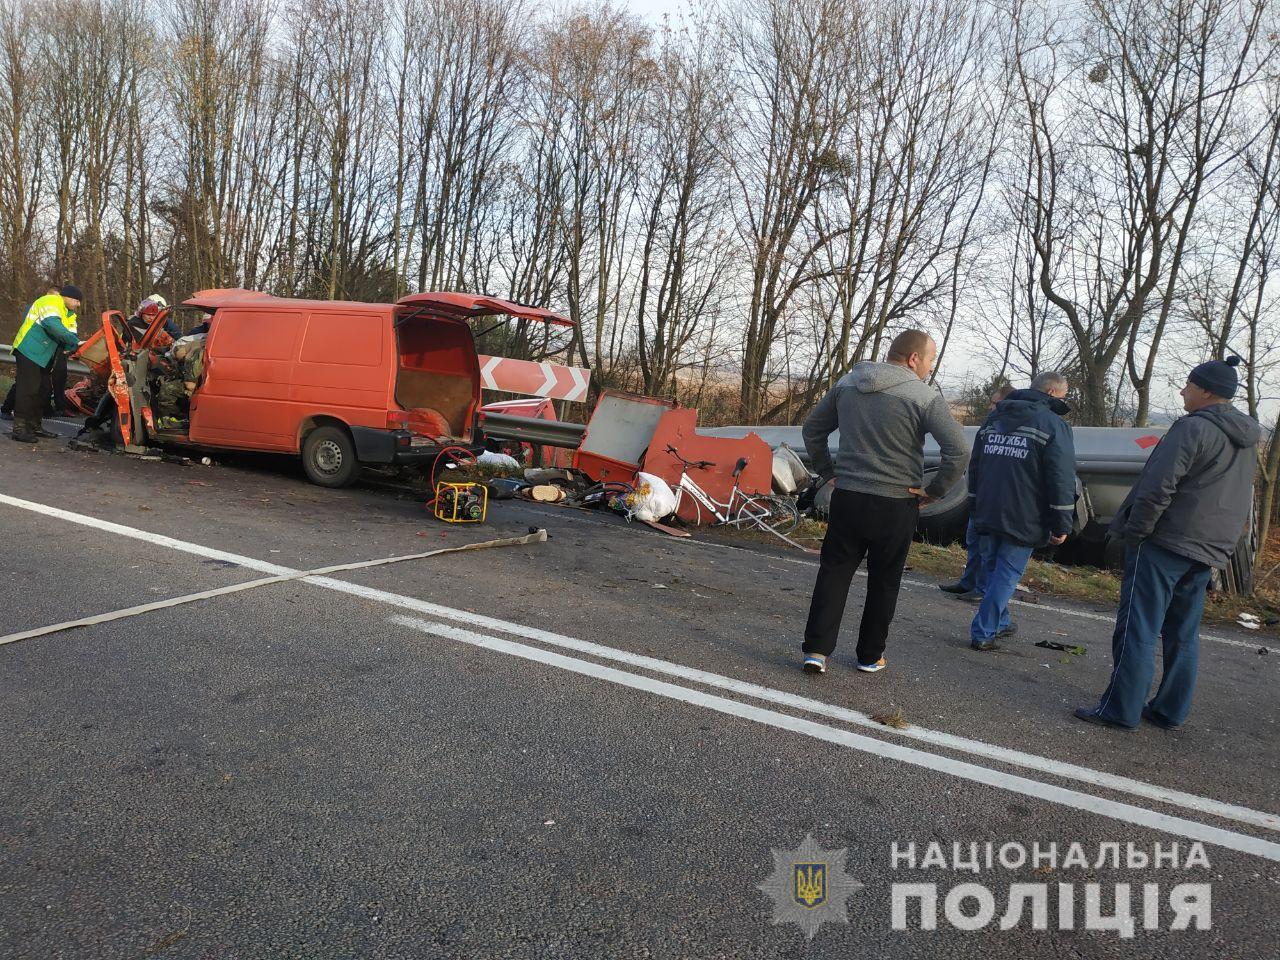 Трагическое ДТП в Ровненской области: трое погибших и перевернувшийся бензовоз из-за лихачества - кадры